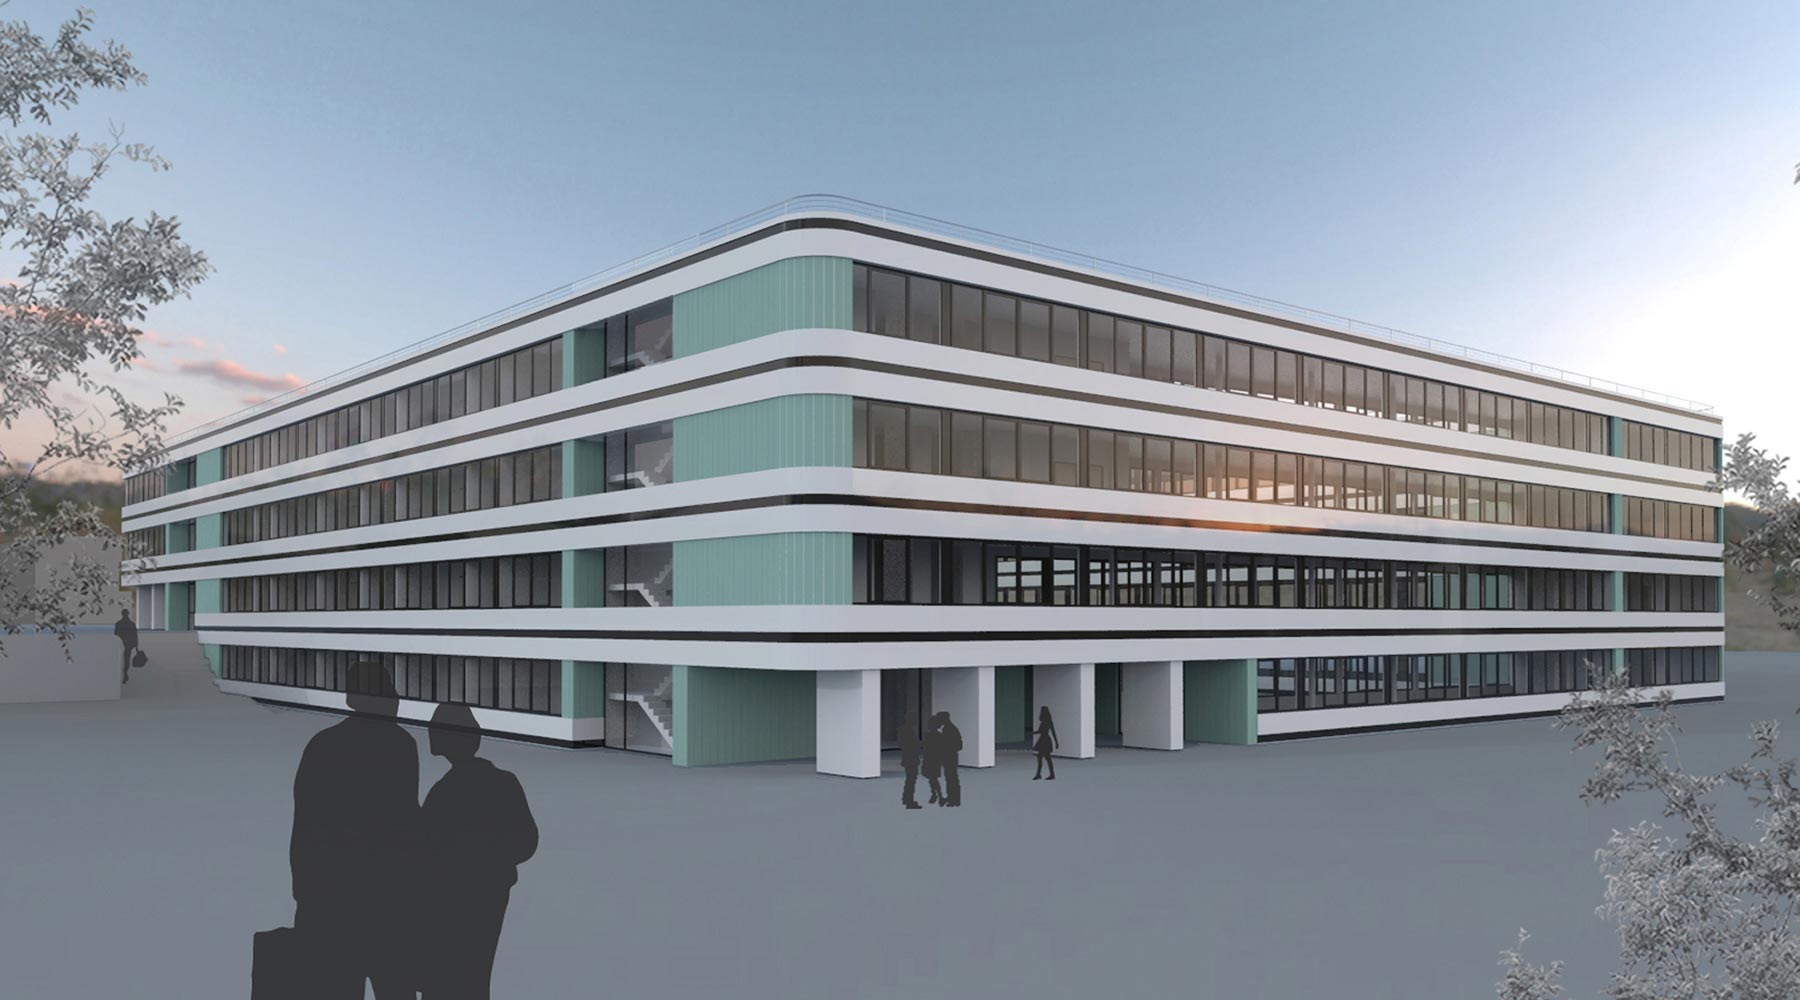 Machbarkeitsstudie für den Neubau eines Bürogebäudes in Aachen. 3D-CAD-Model des Gebäudes von außen. Rundecken, Fensterfassaden, Etagen durch weiße Elemente abgegrenzt, Farbakzente.